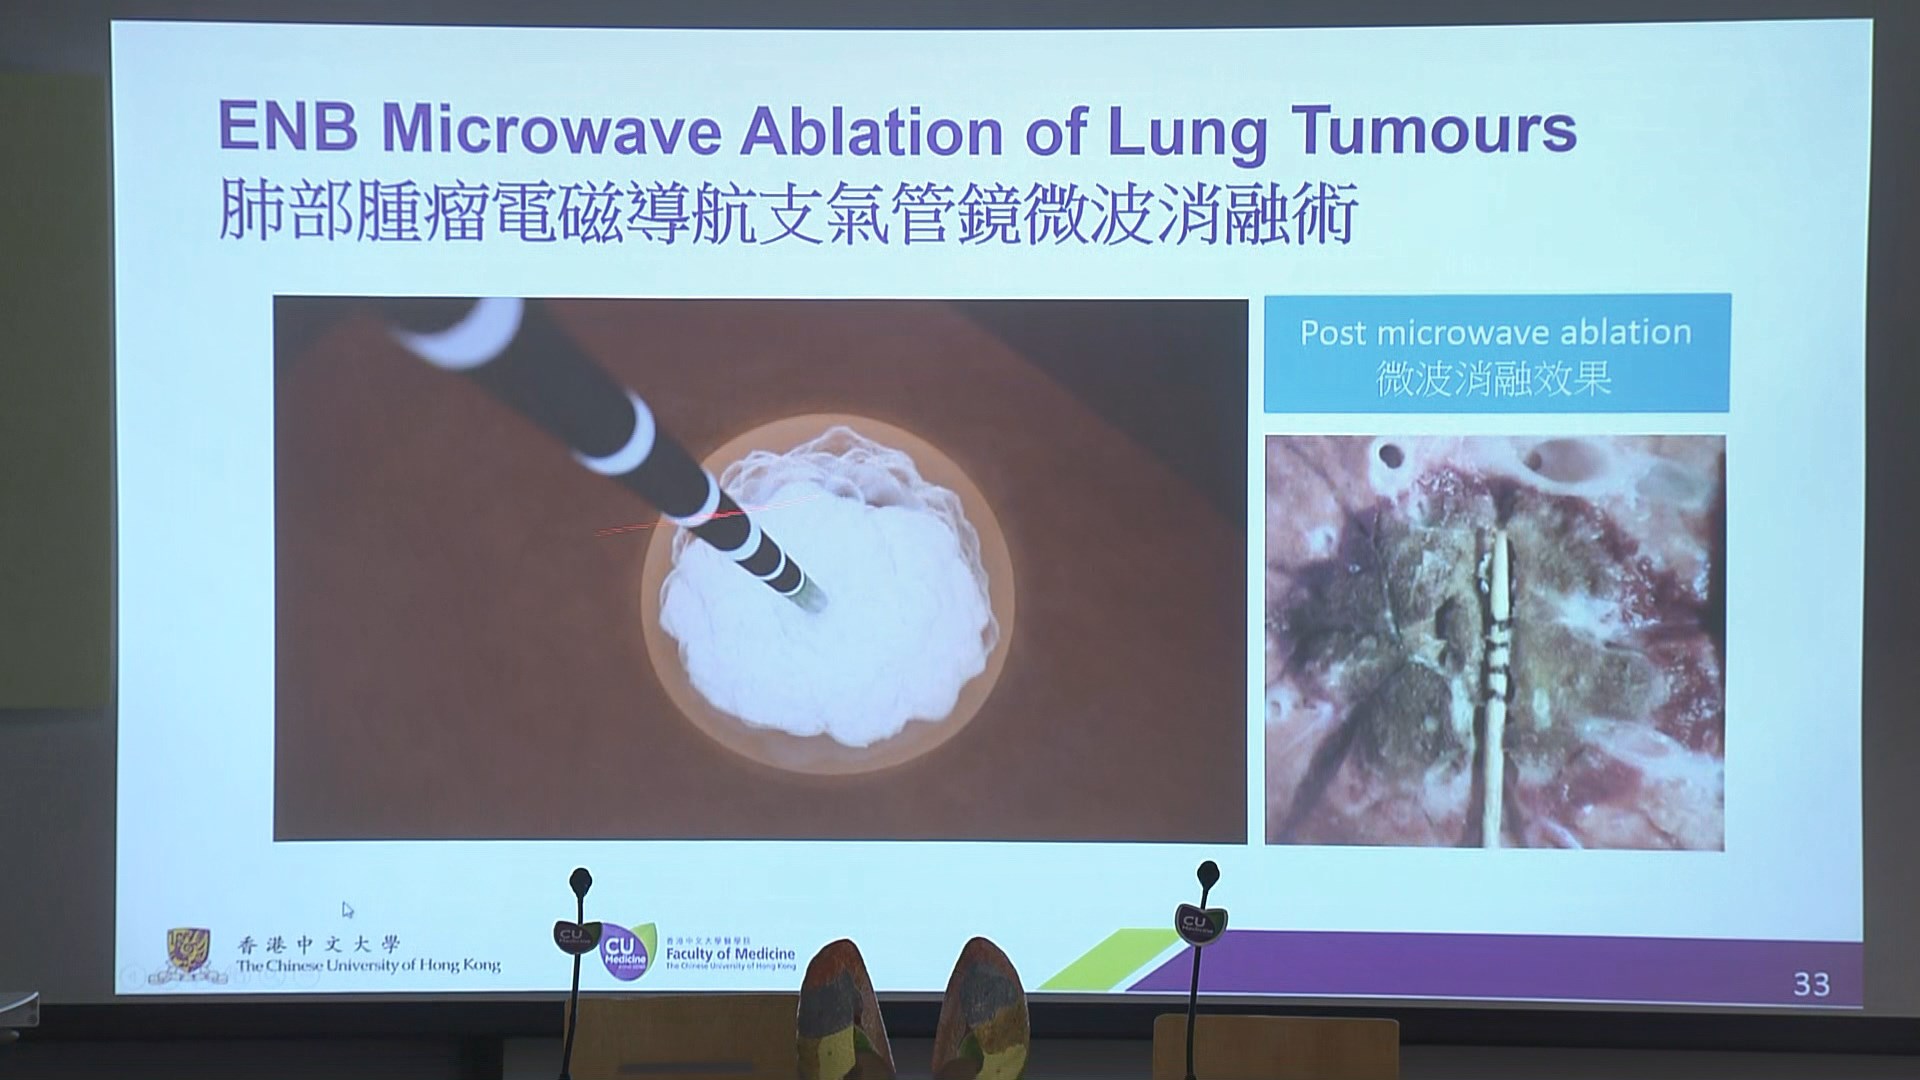 中大引入經氣管微波消融術治療肺癌